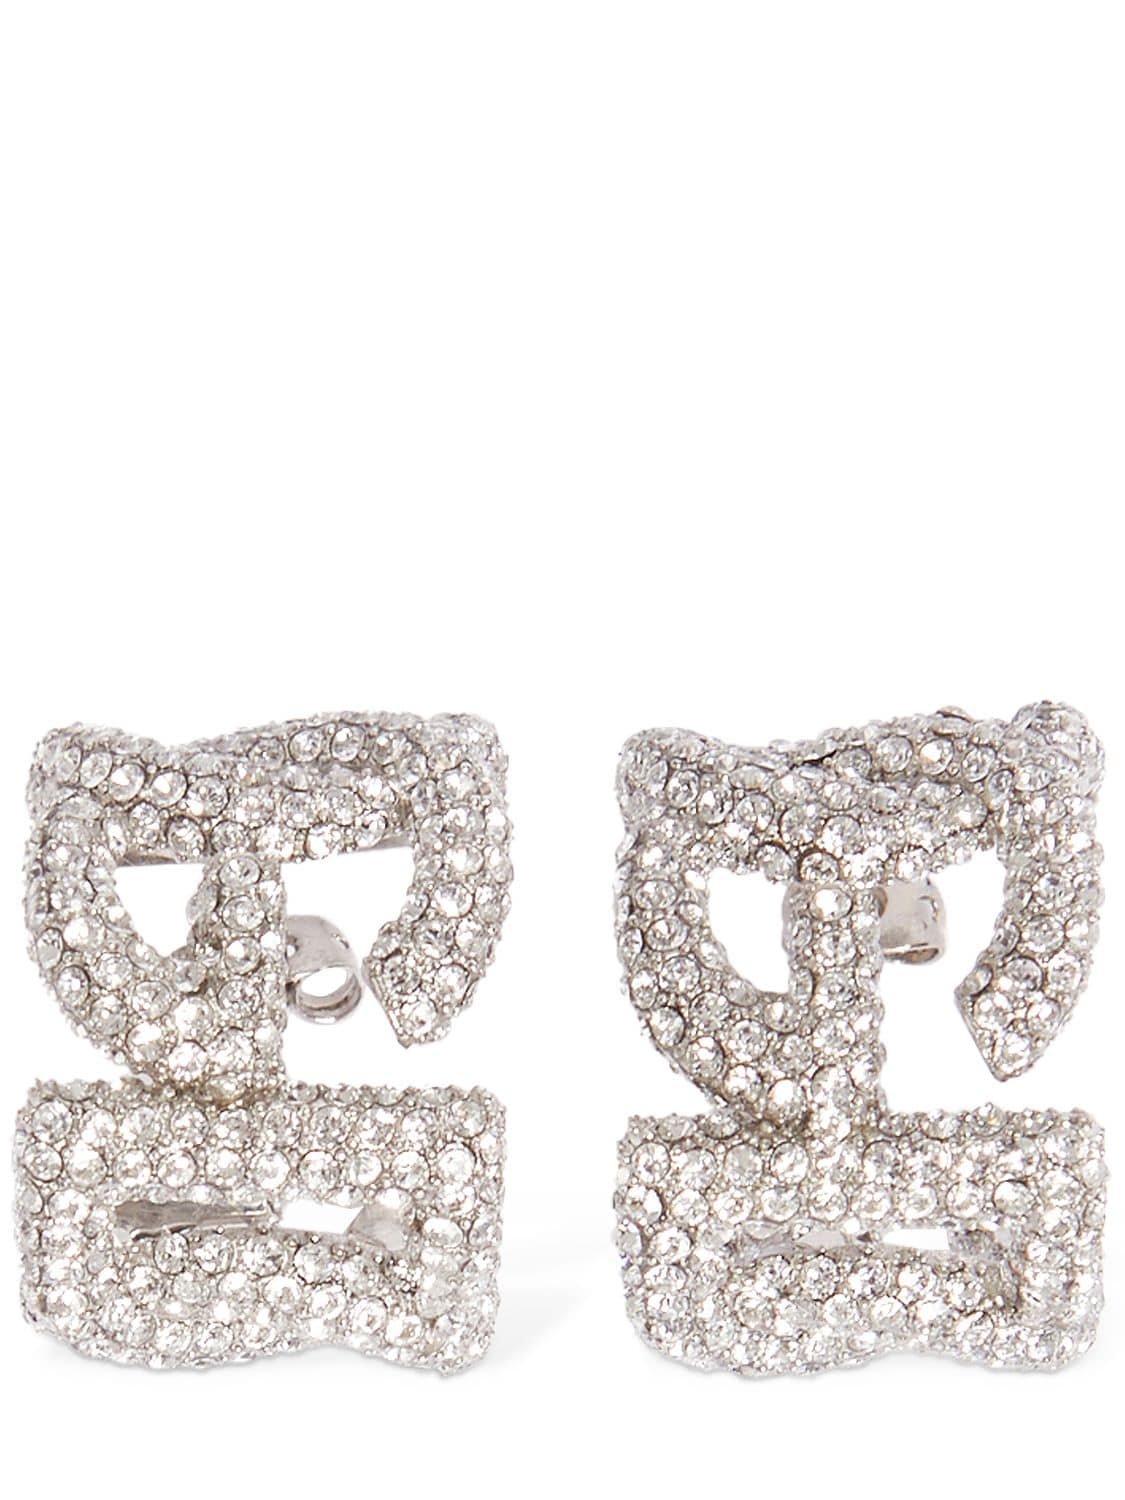 Image of Crystal Embellished Dg Hoop Earrings